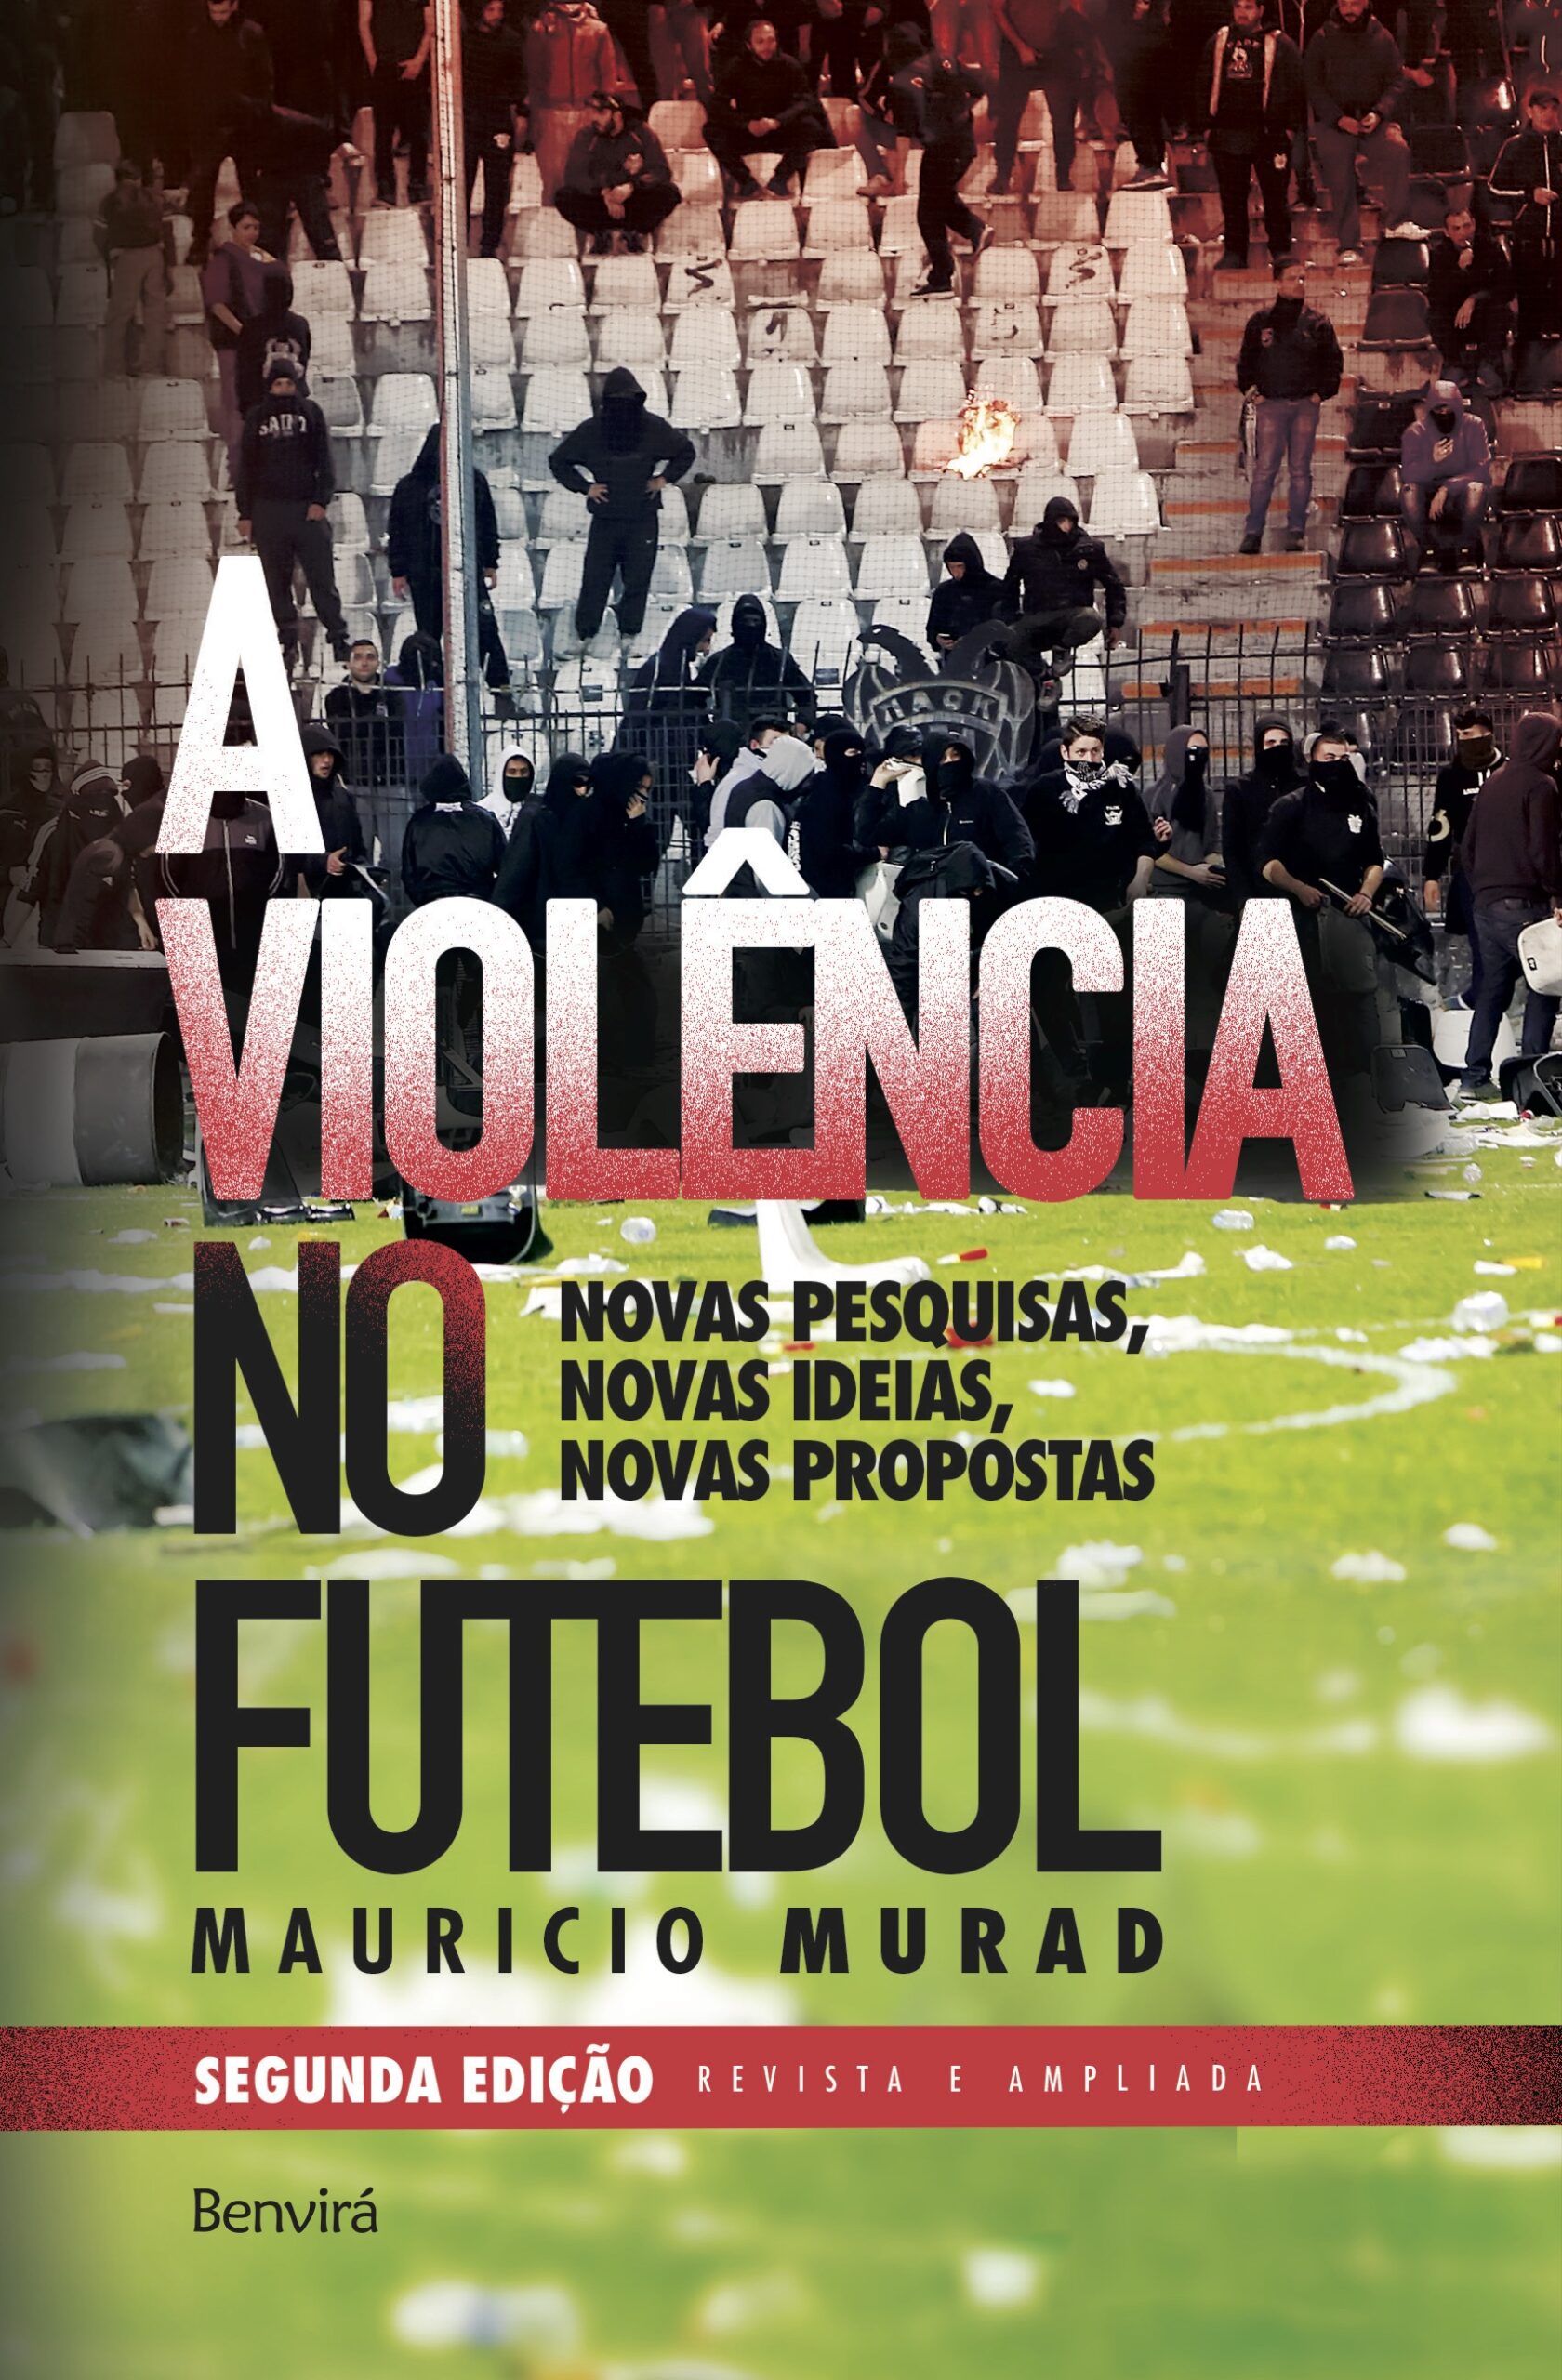 O paradoxo do futebol e a violência, Internacional